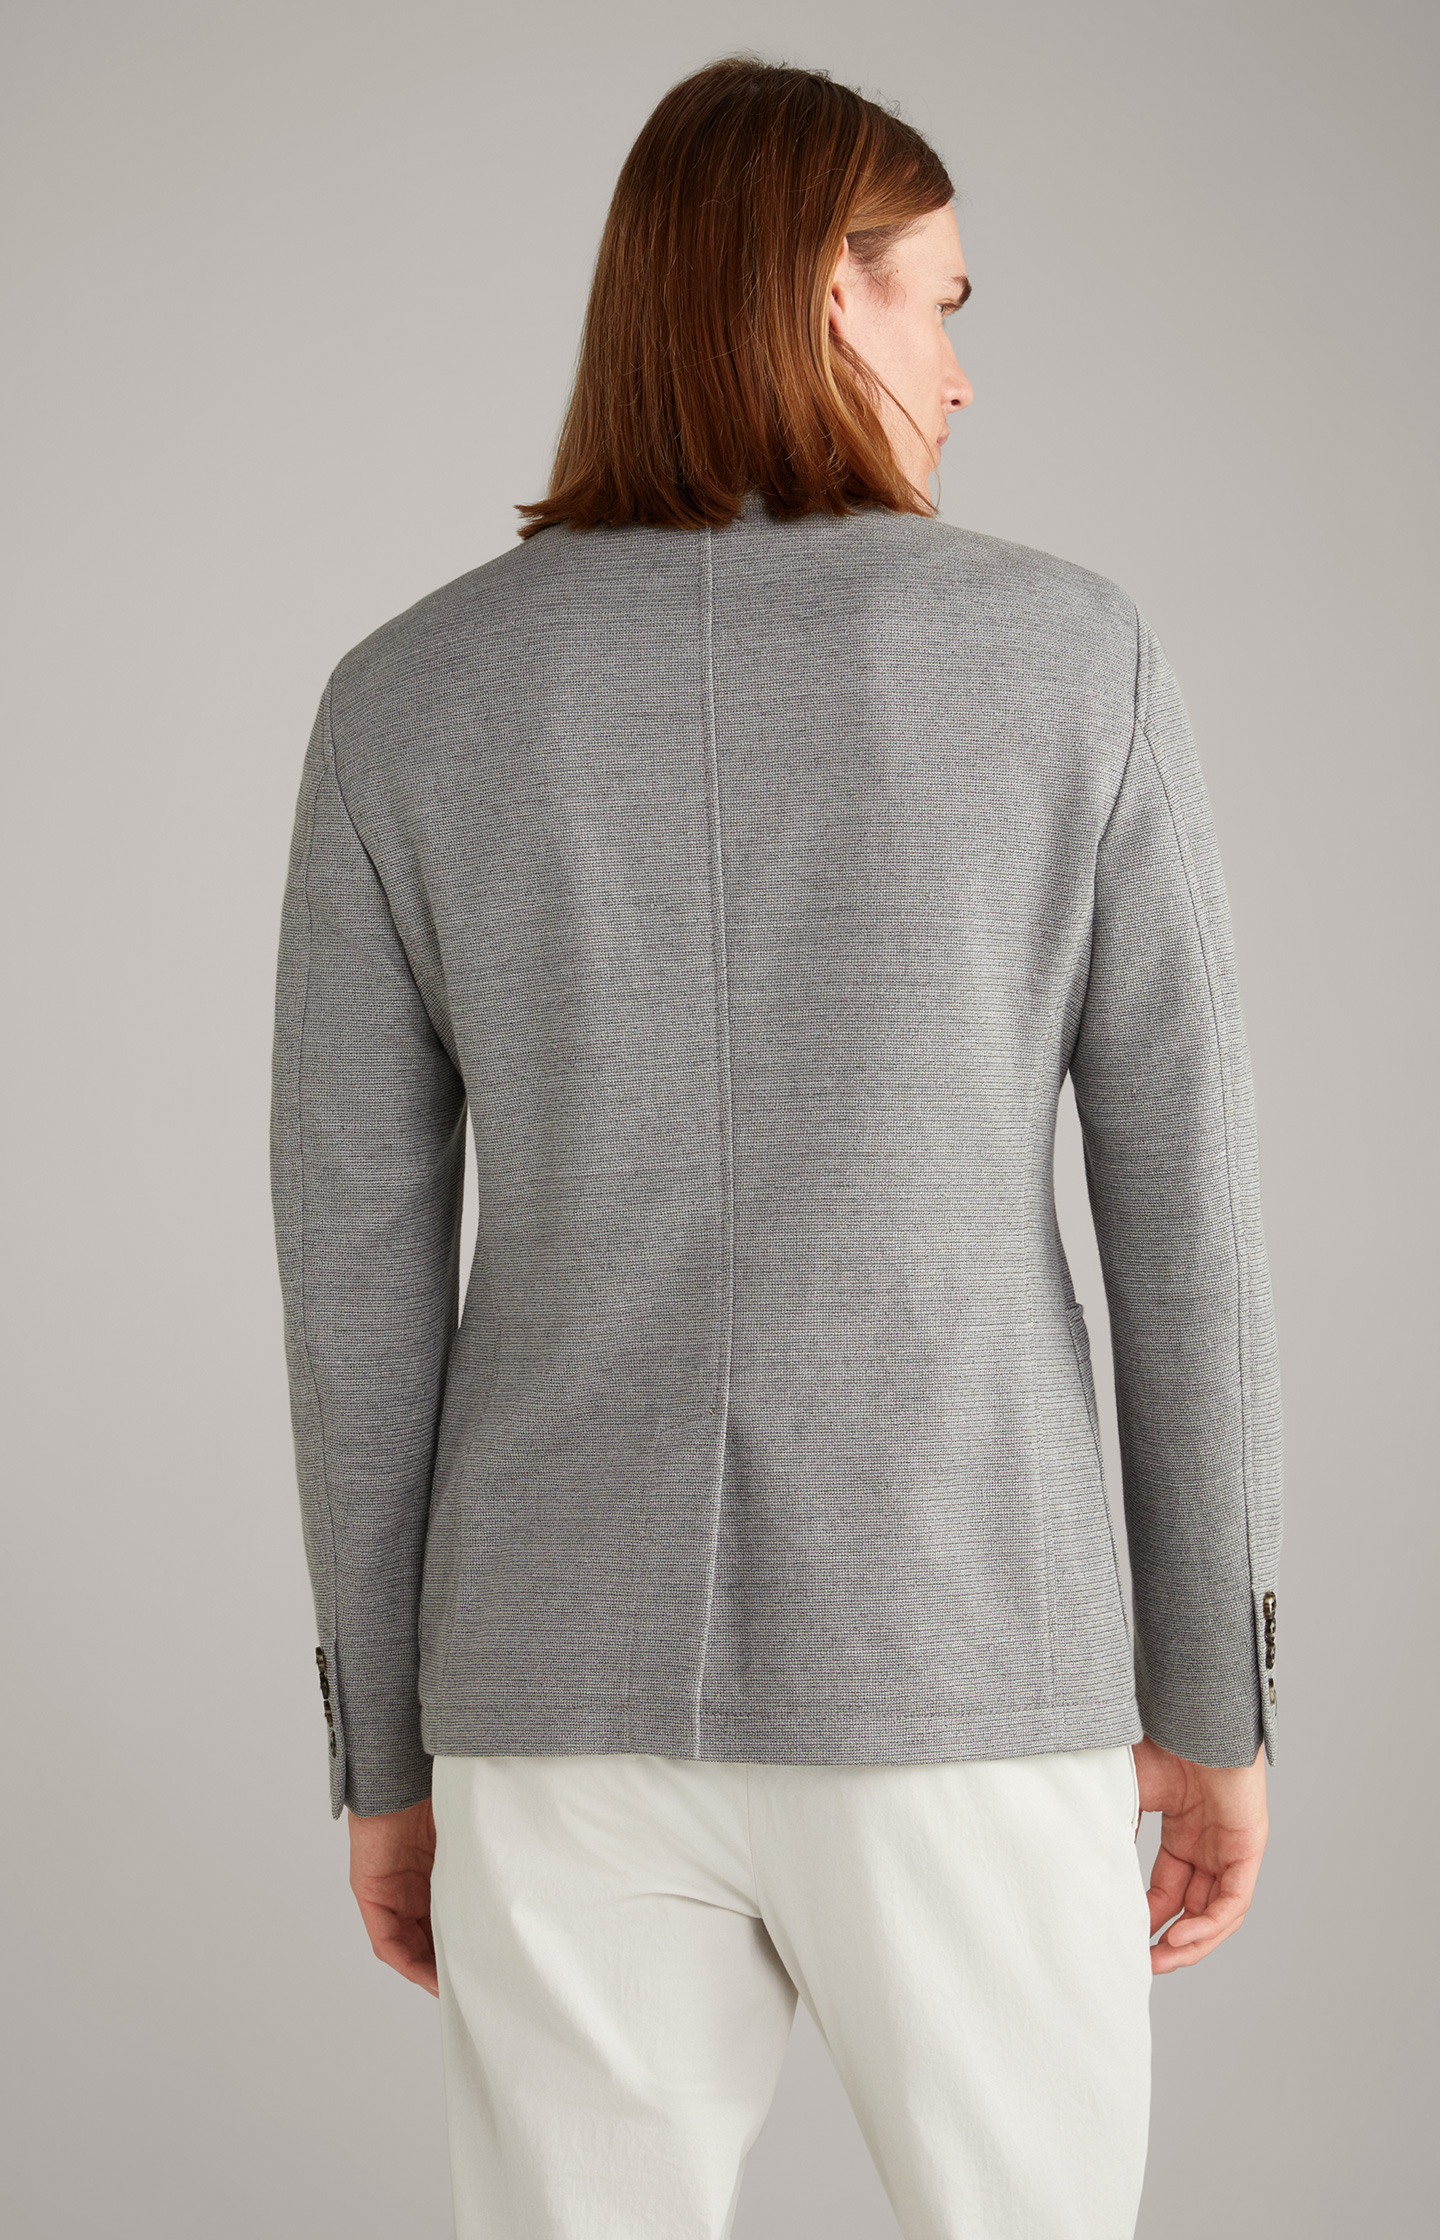 Hankook jacket in light grey - in the JOOP! Online Shop